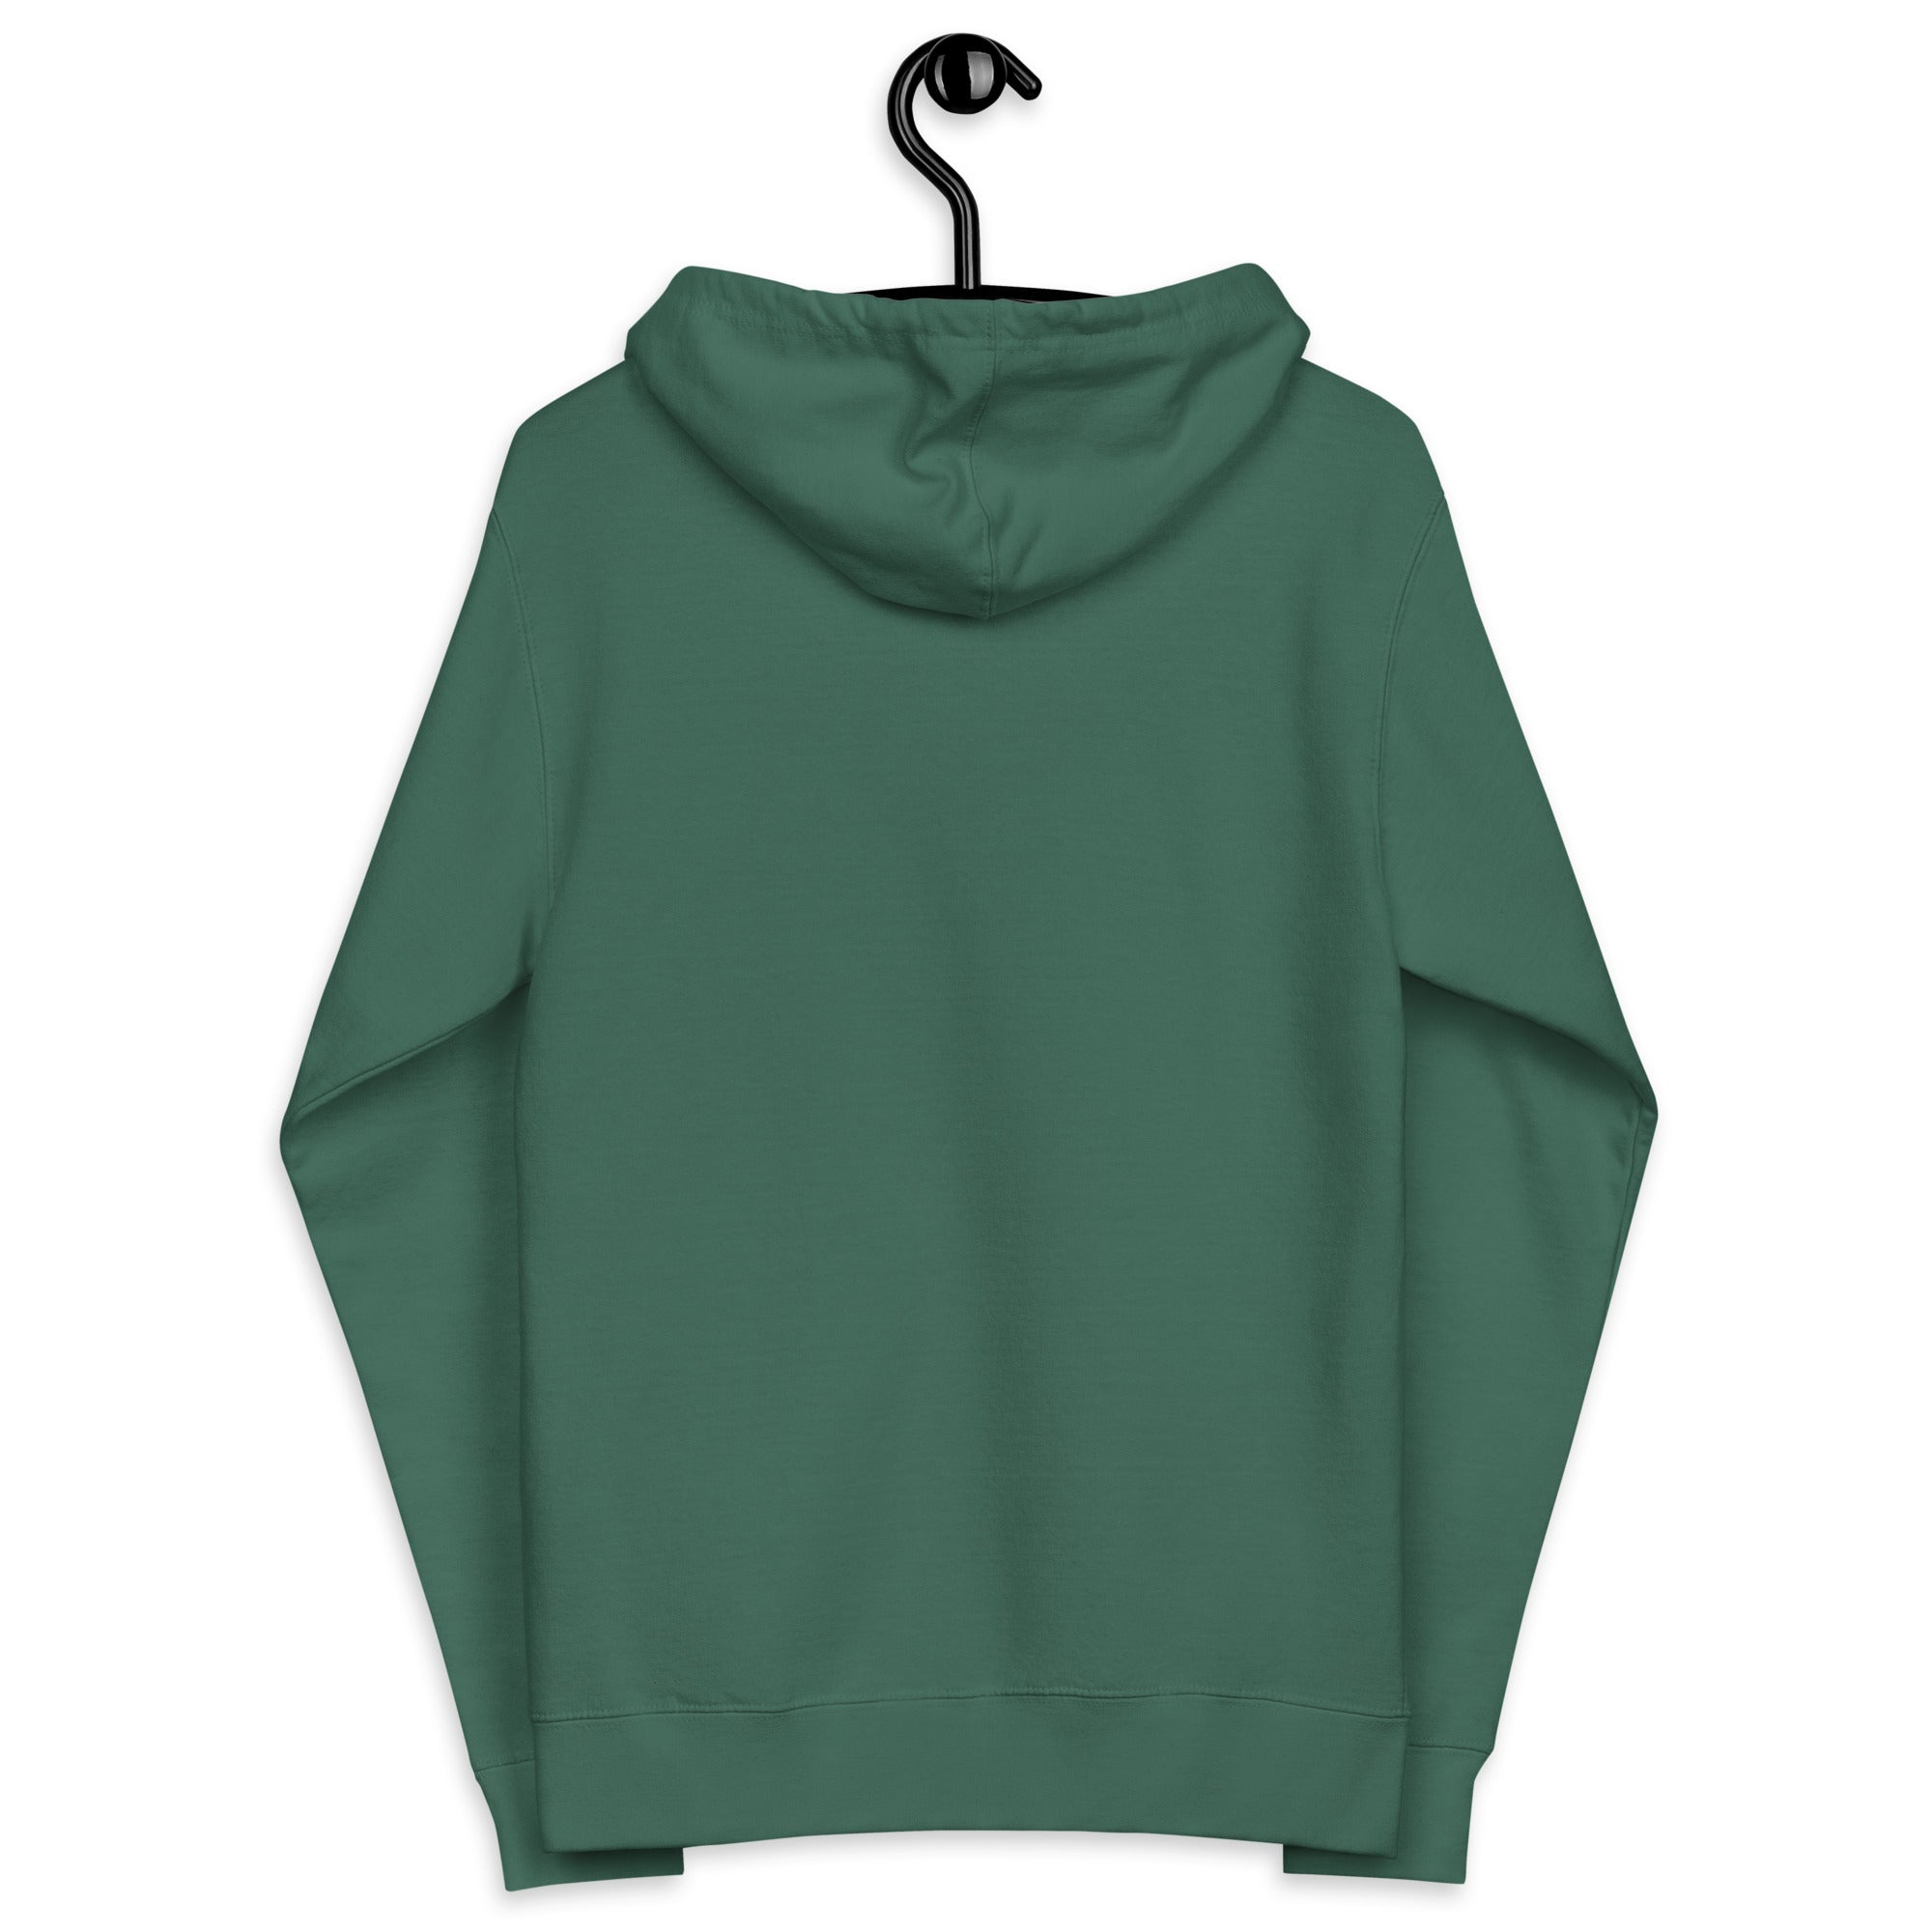 Panda Mastro Logo Unisex fleece zip up hoodie